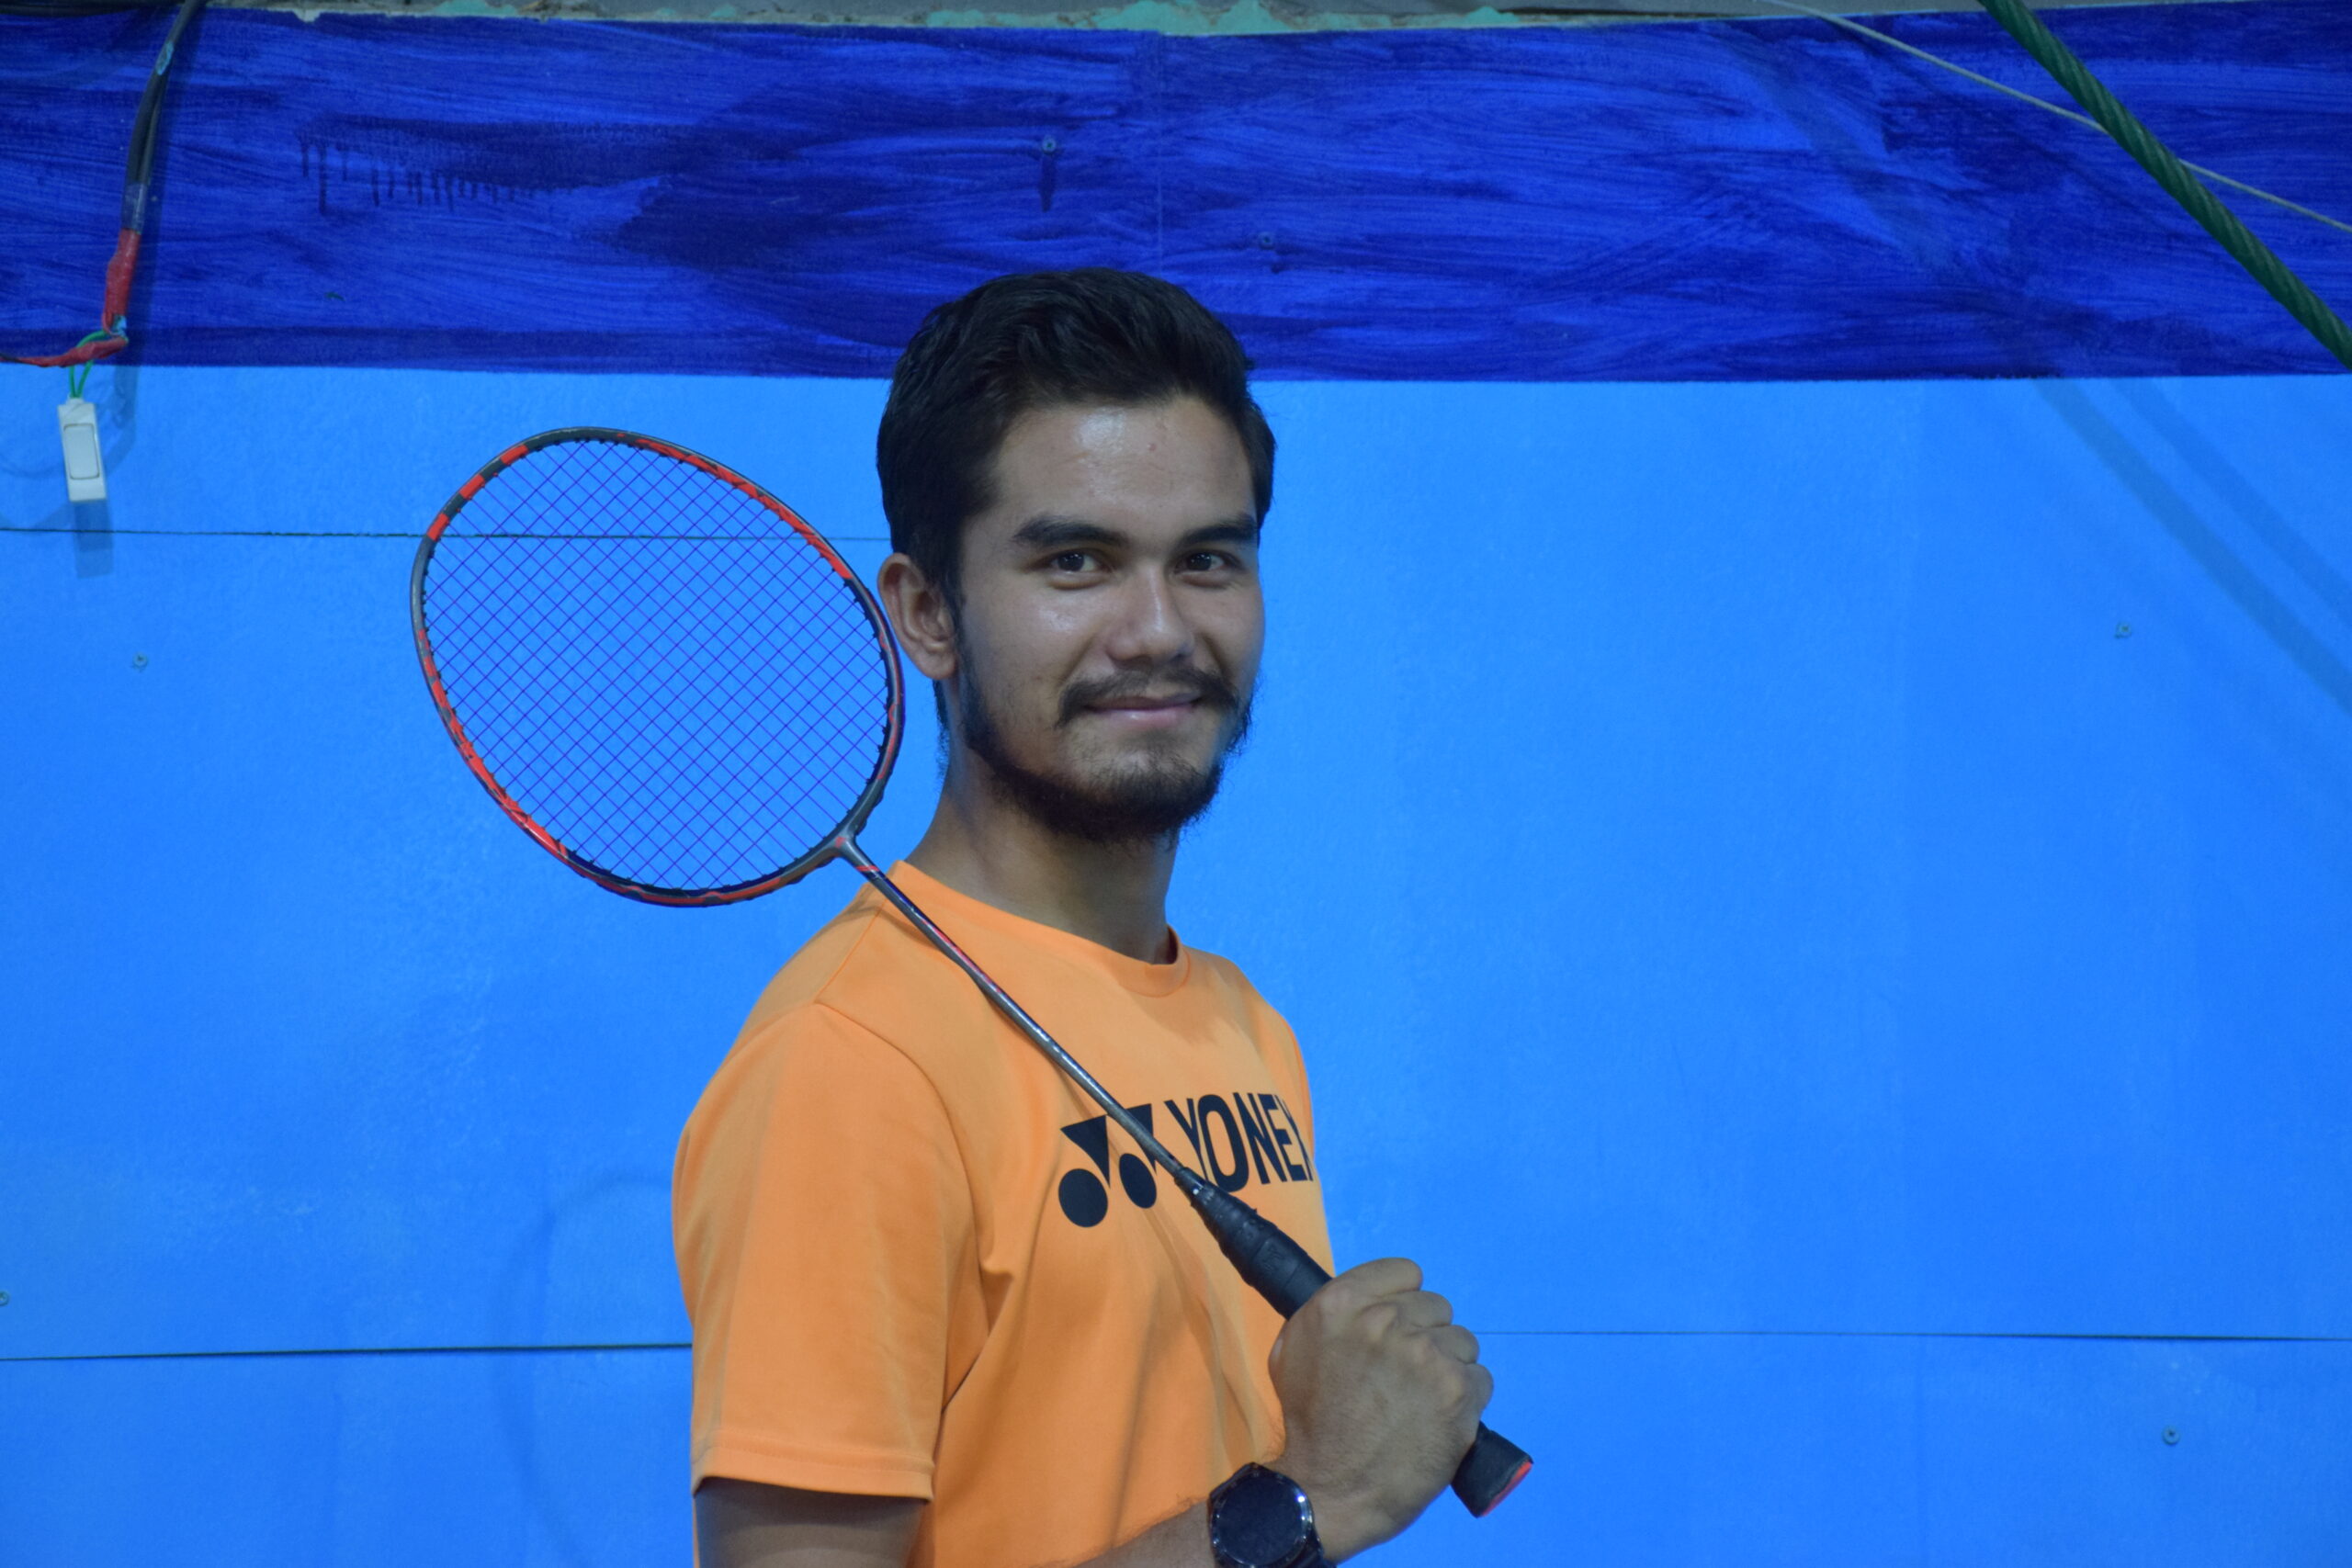 Badminton Coach